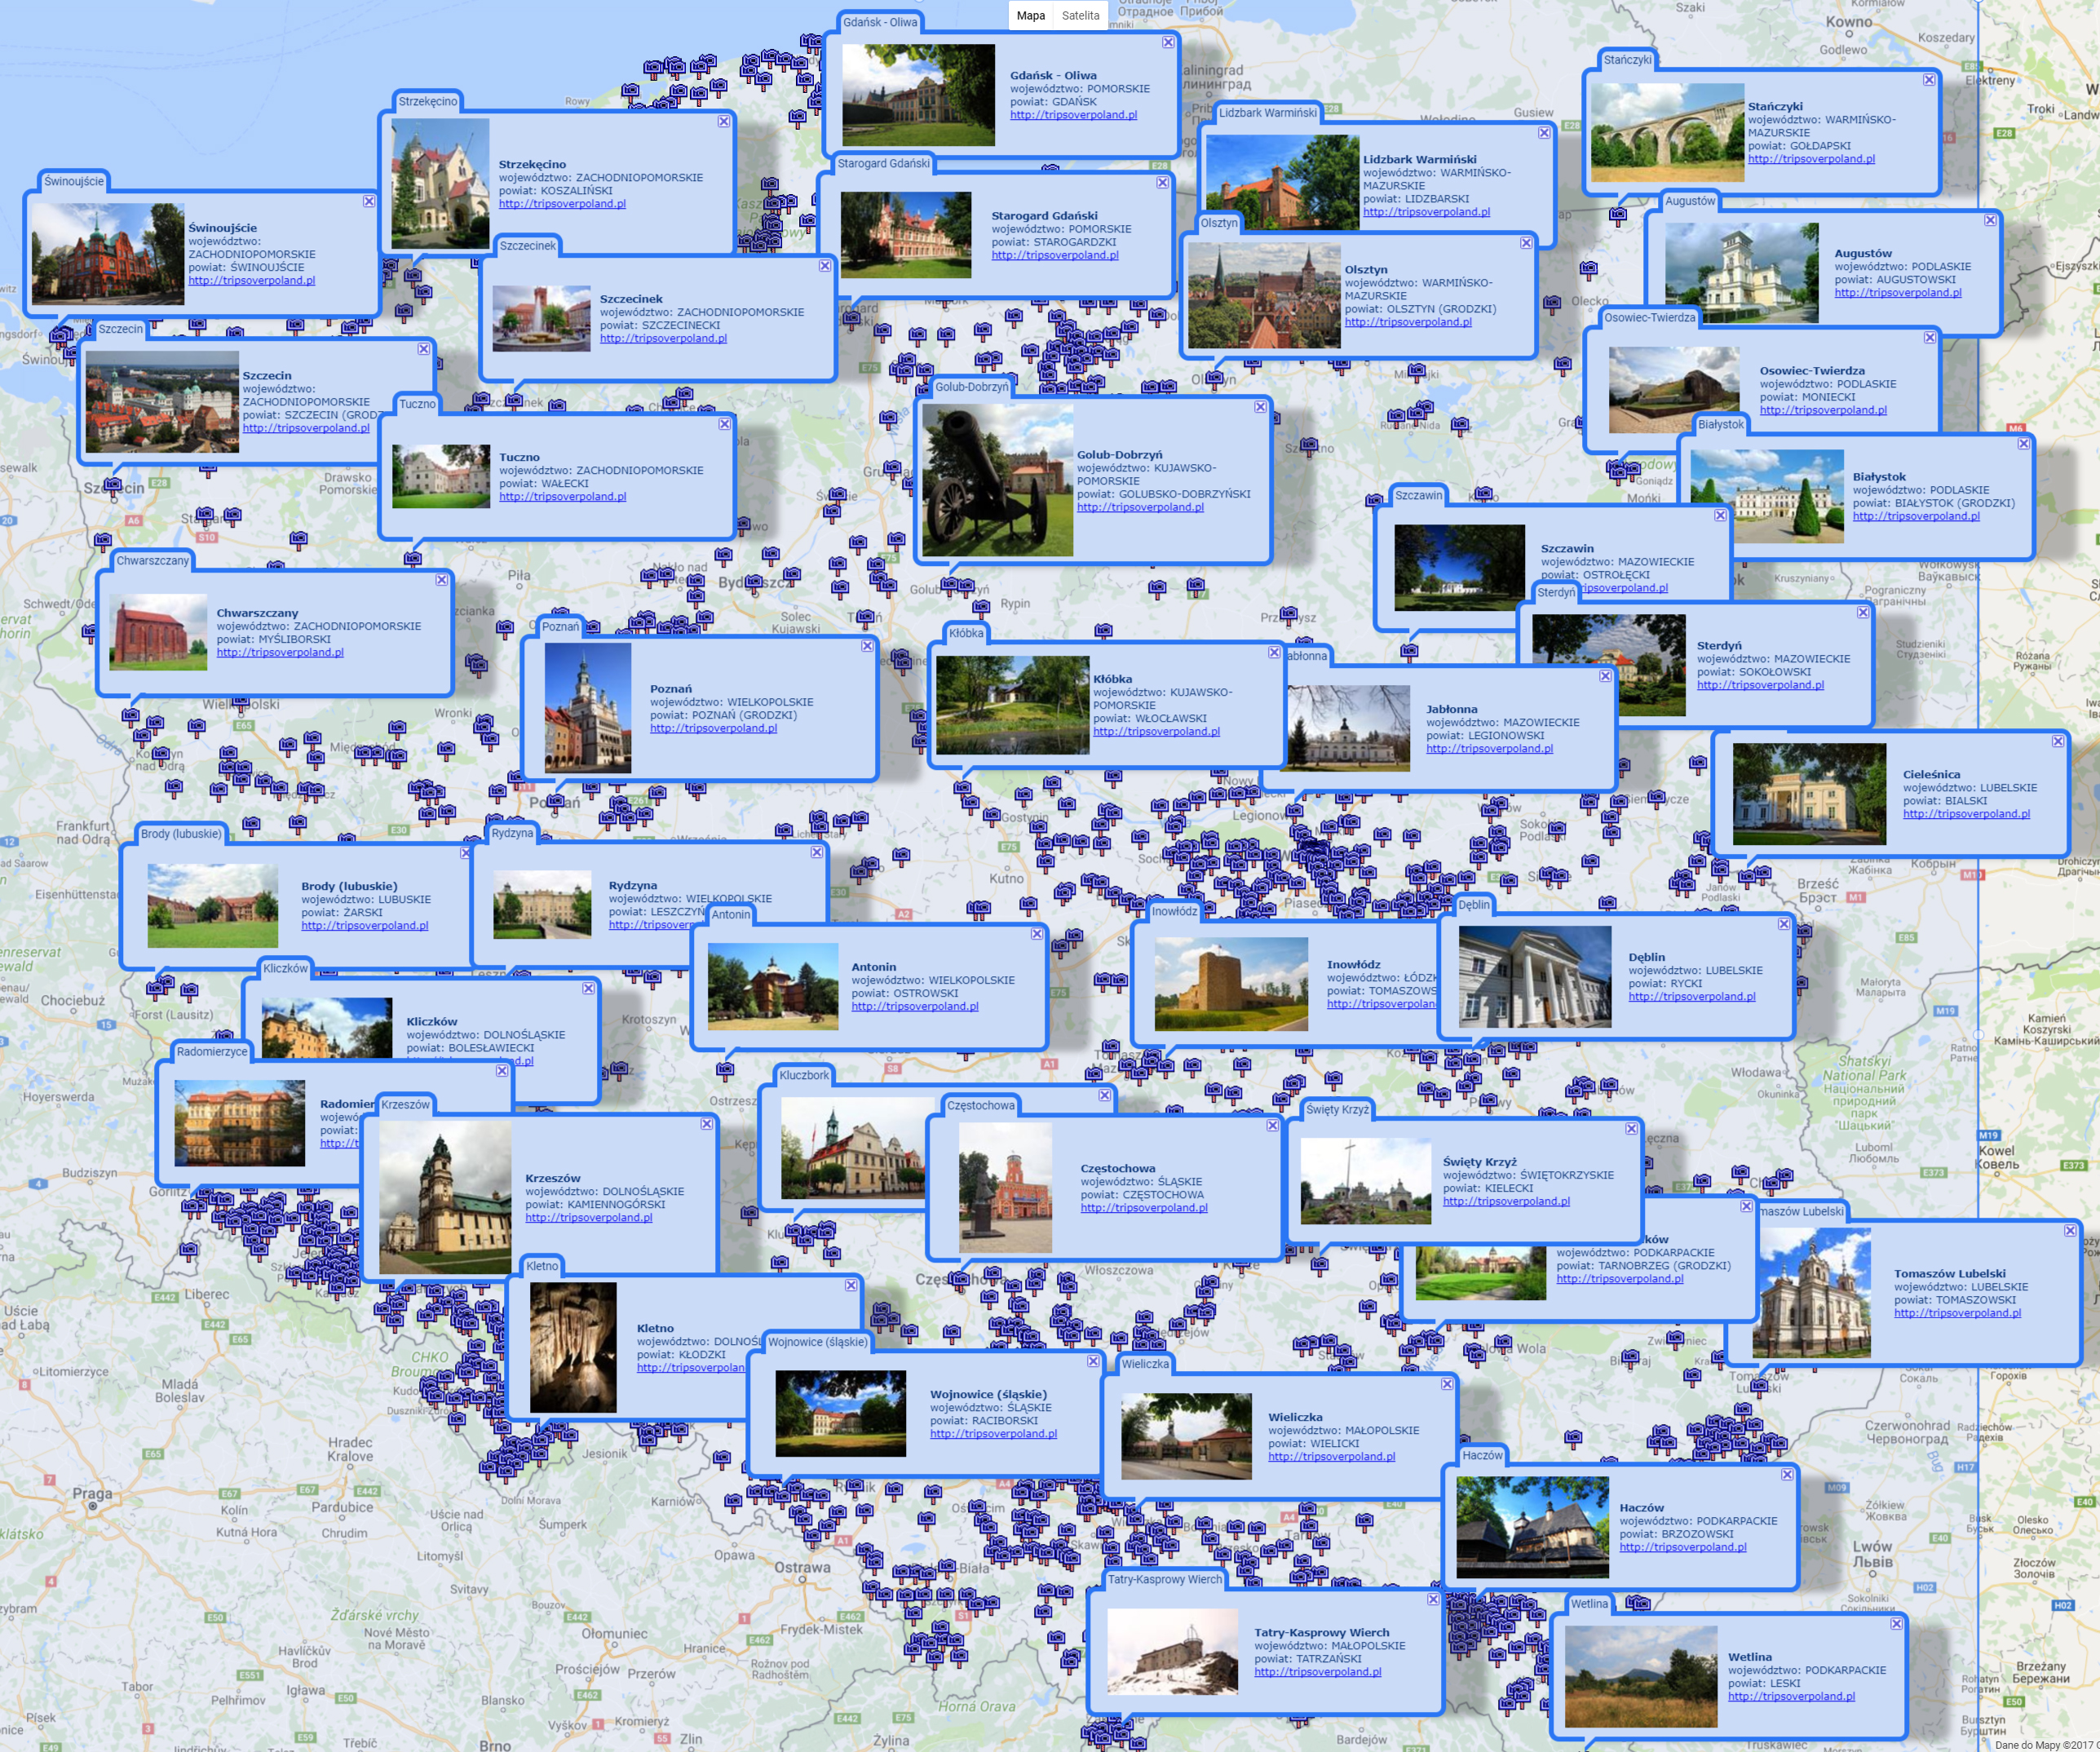 Wyszukiwarka uproszczona pełnoekranowa - wyszukiwanie obszarem prostokątnym - cały obszar Polski